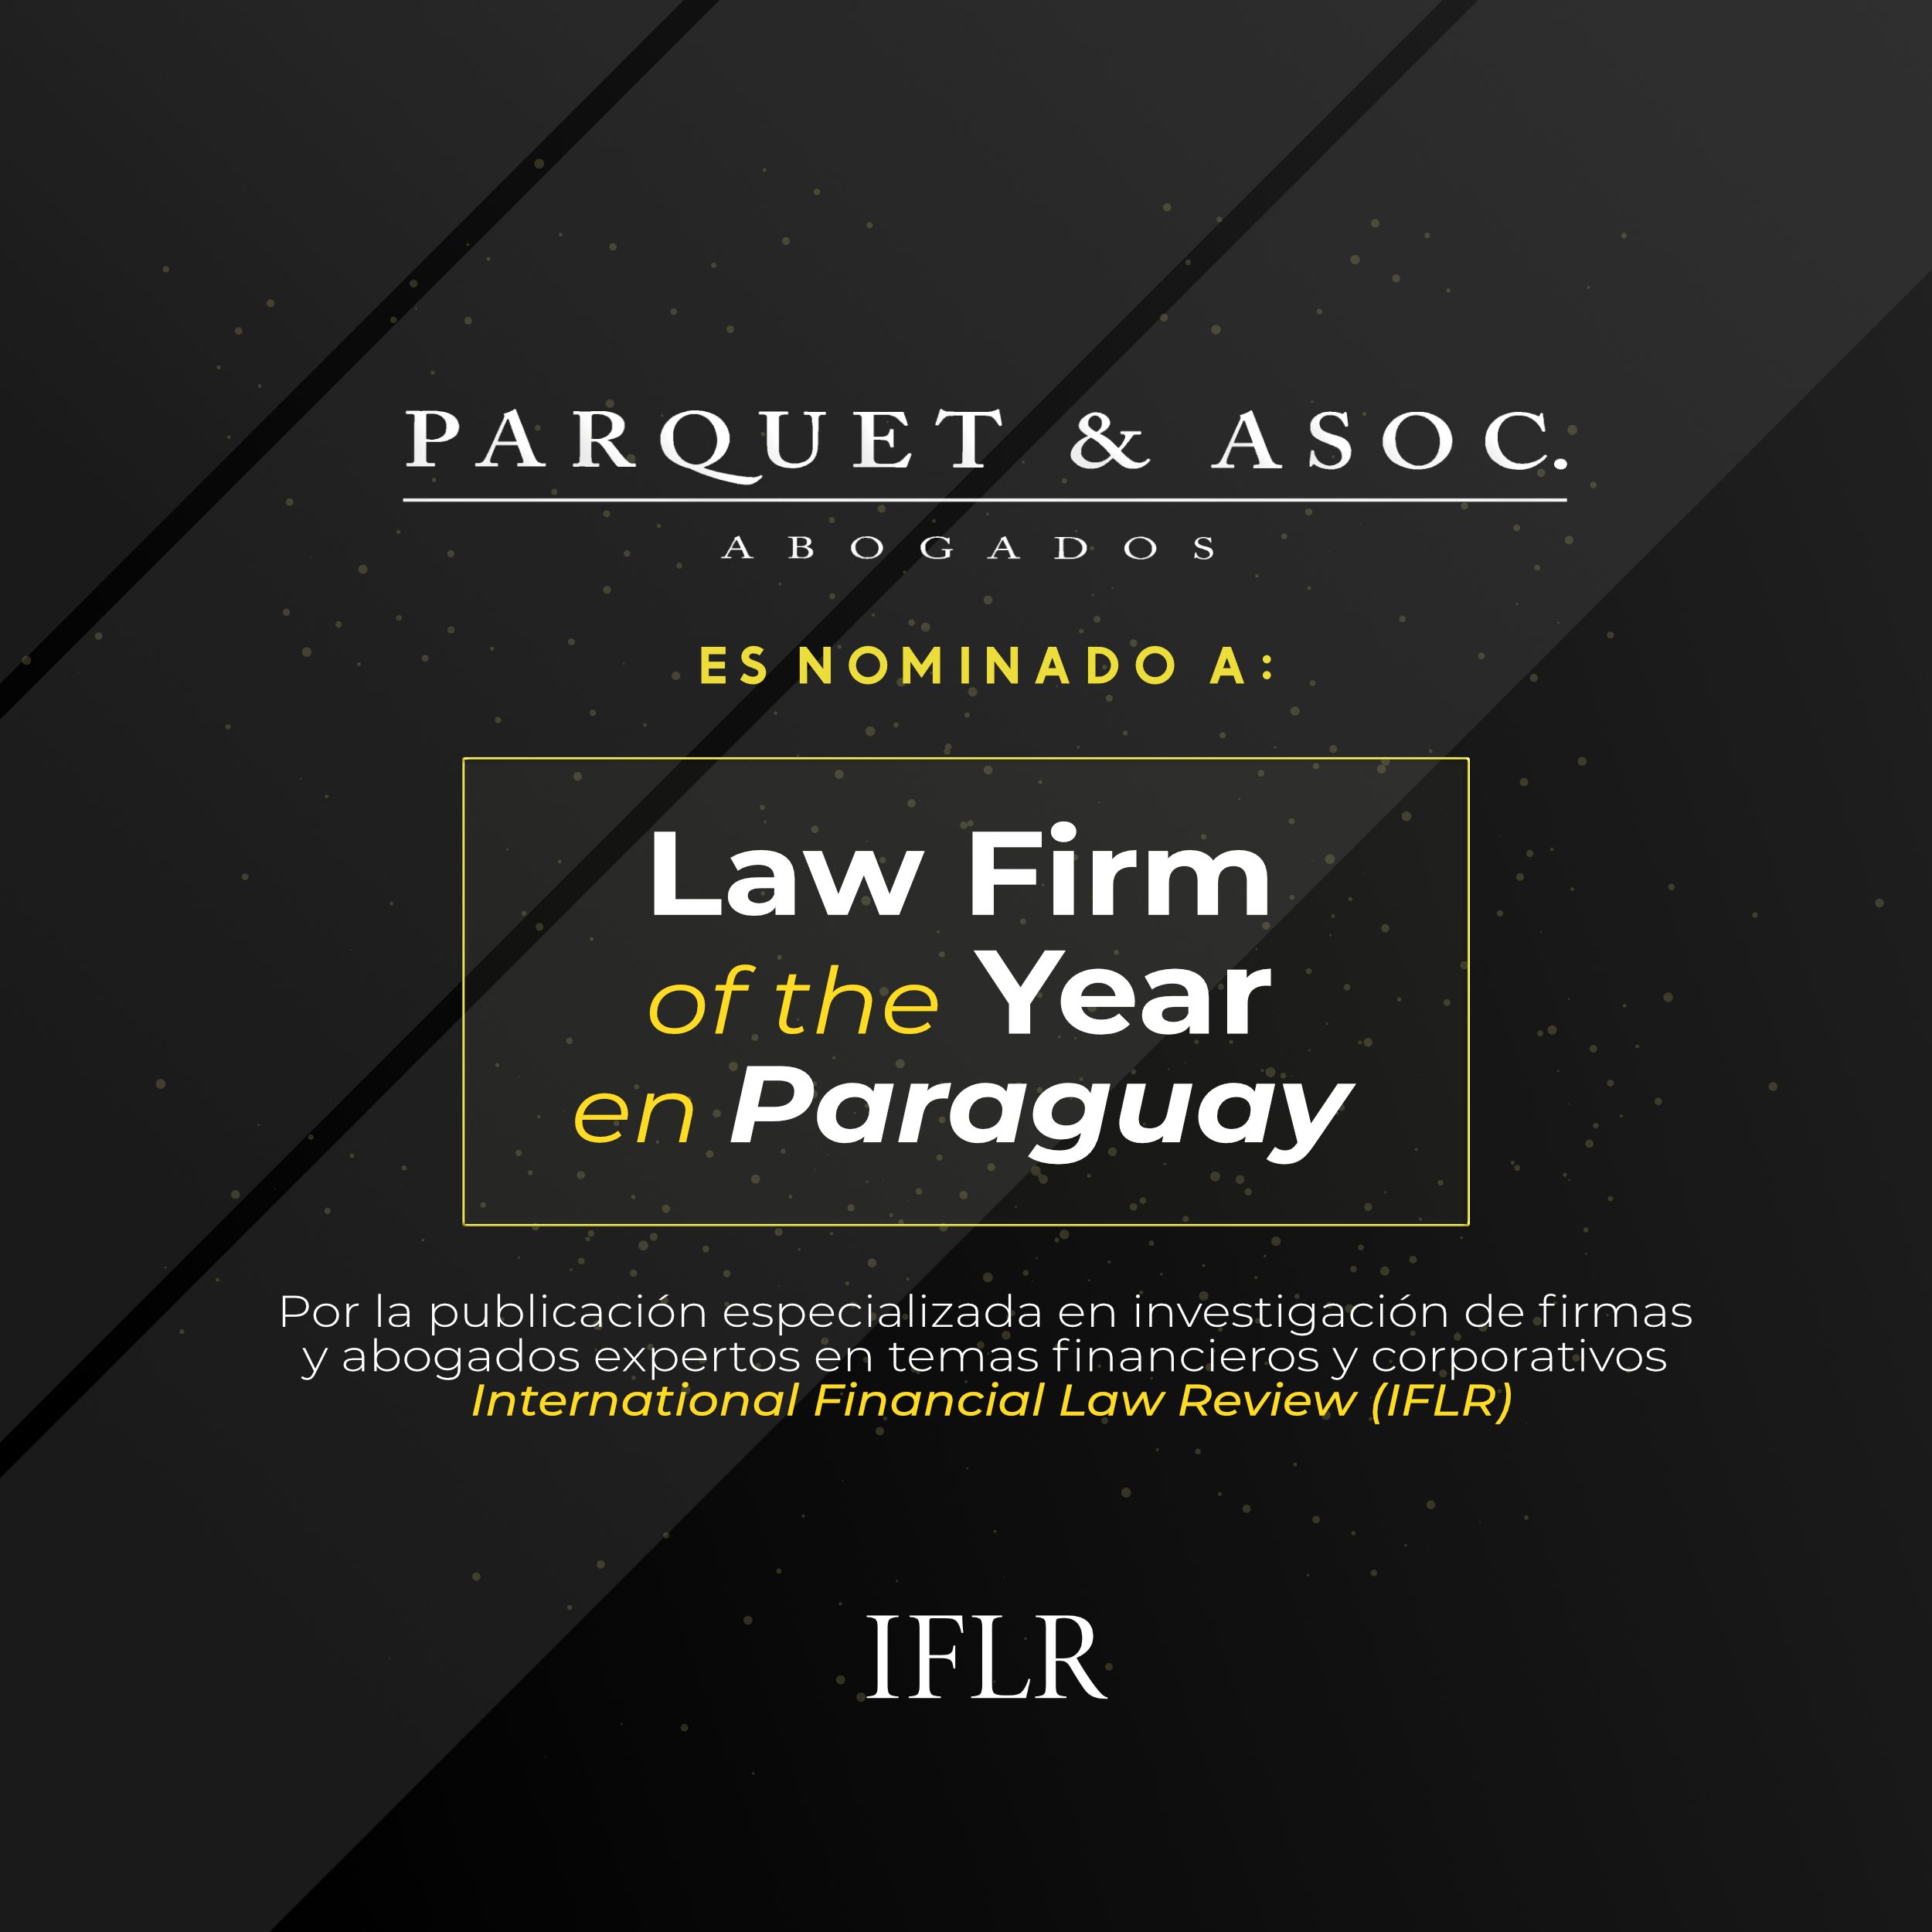 Parquet & Asociados nominado a Law Firm of the Year por IFLR